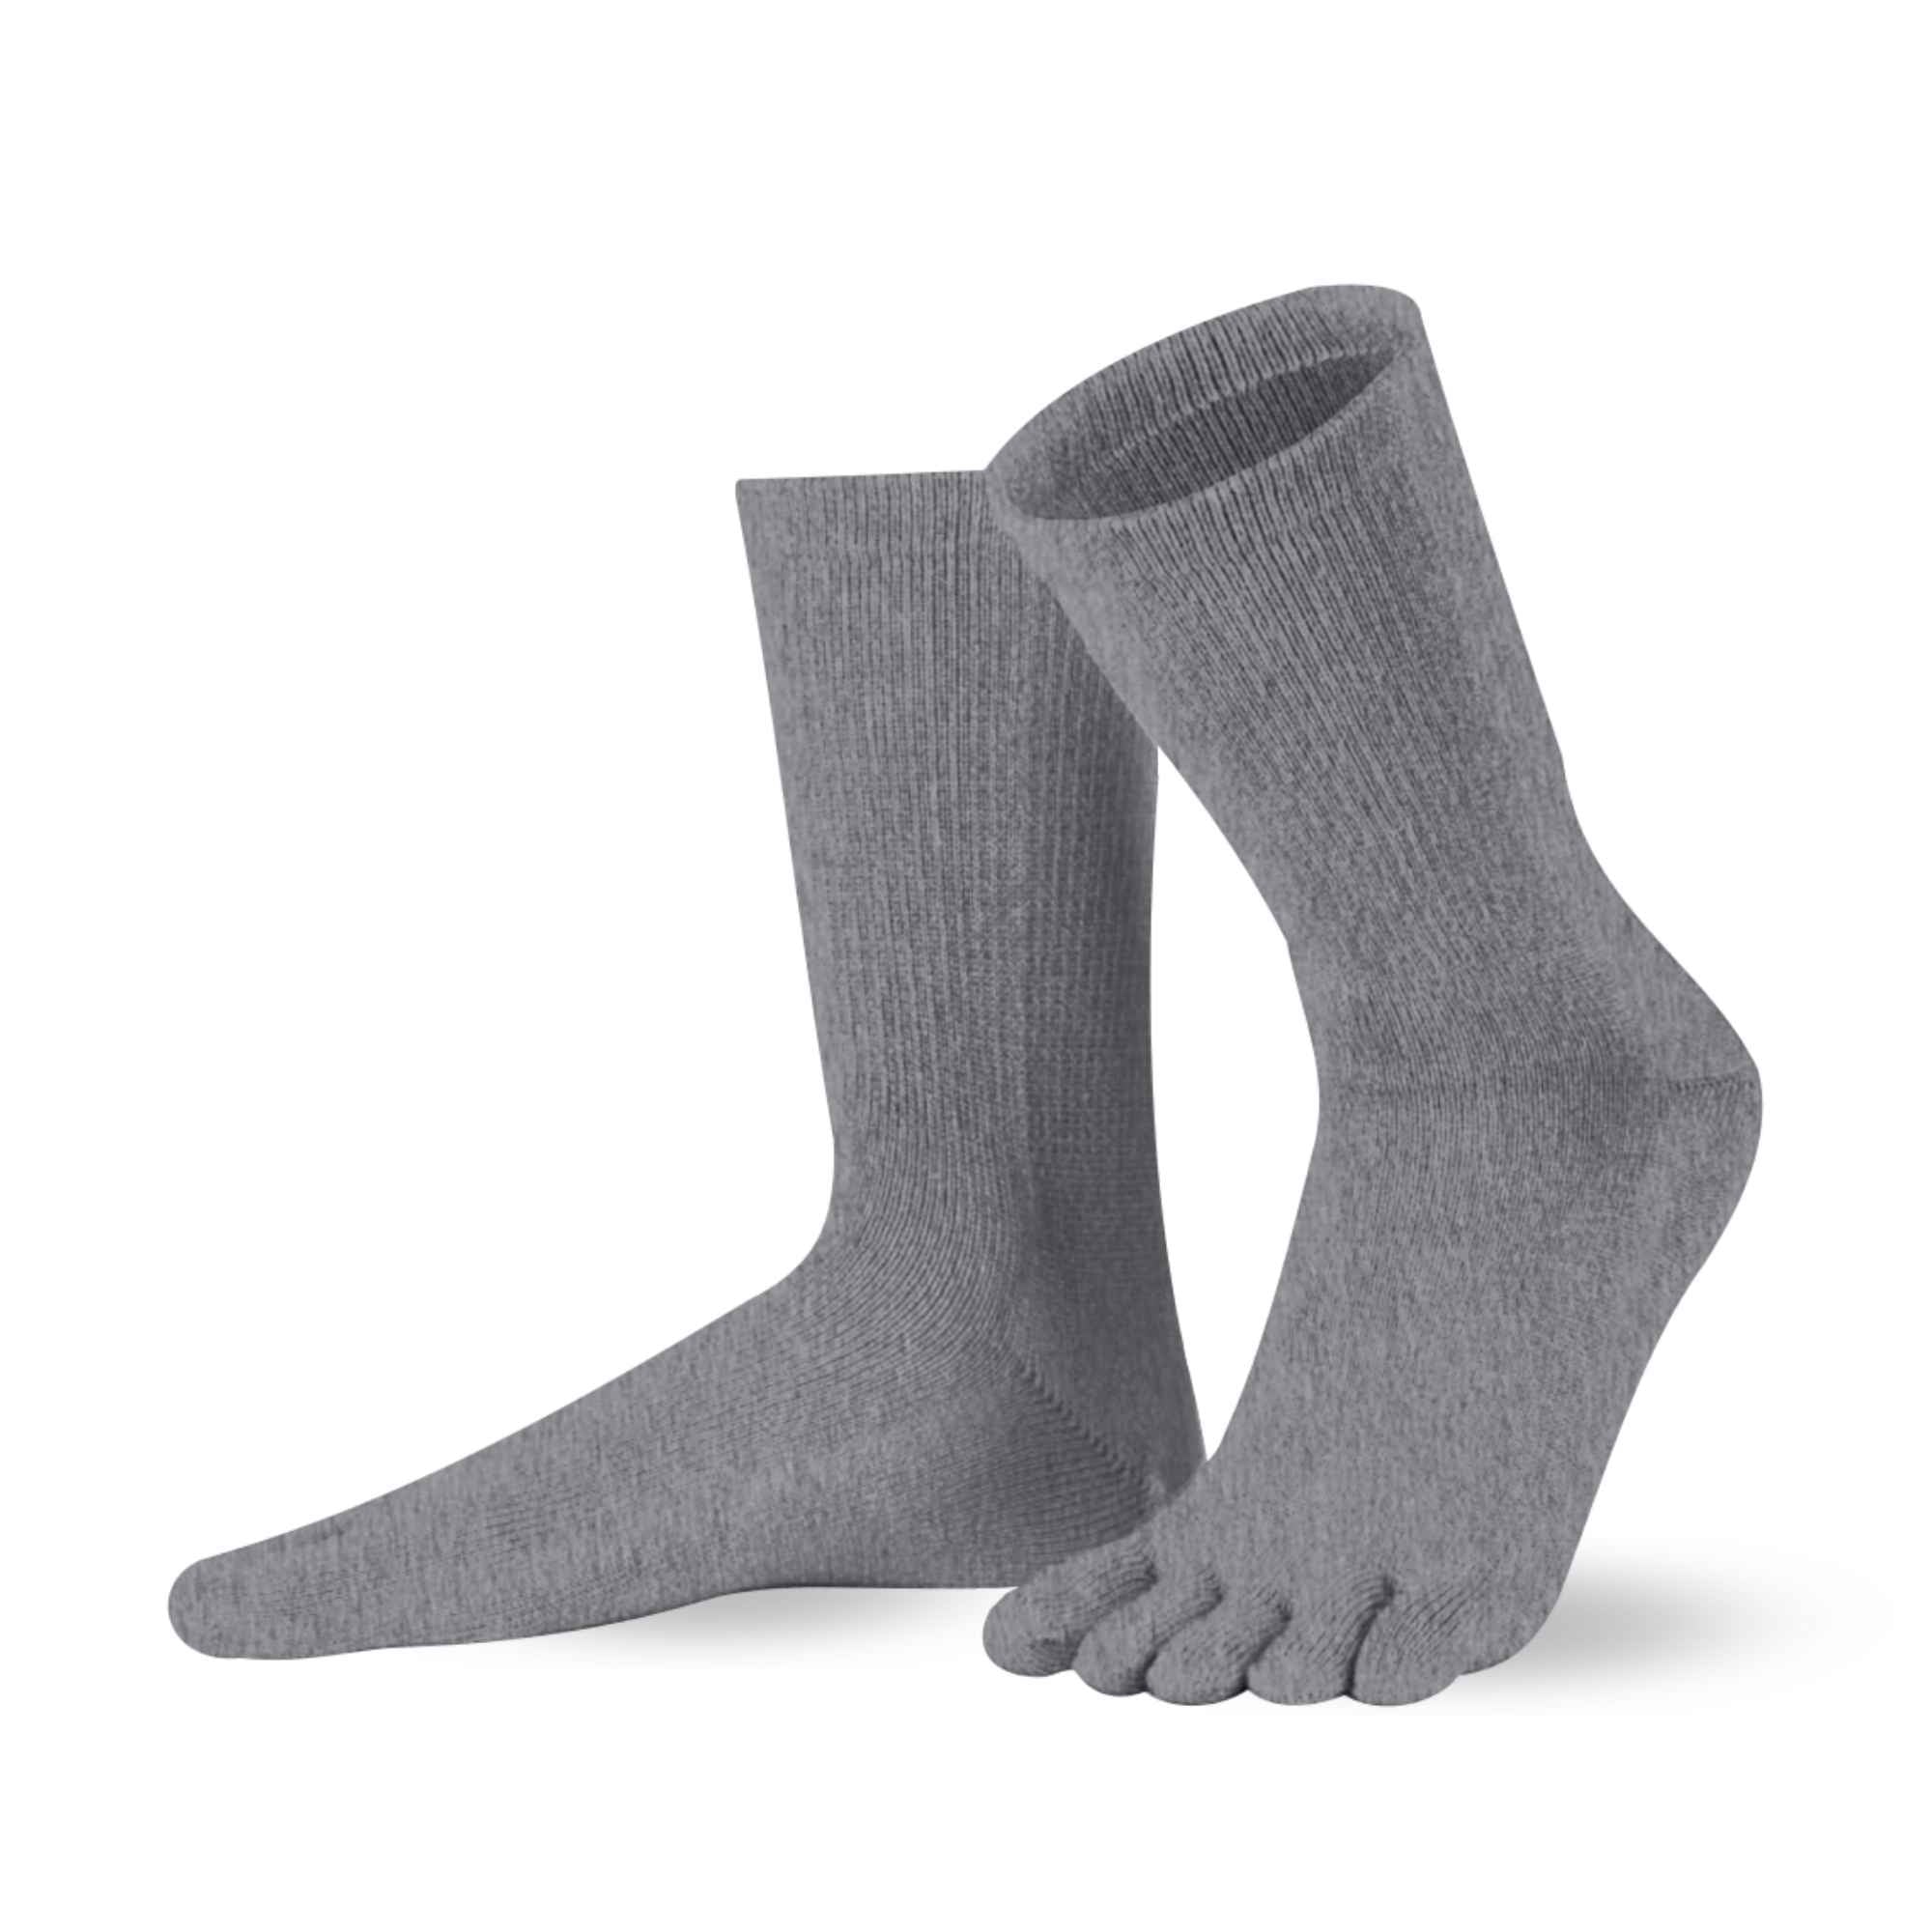 Cotton & Merino , longueur mollet - Knitido®. Le chaussettes à orteils